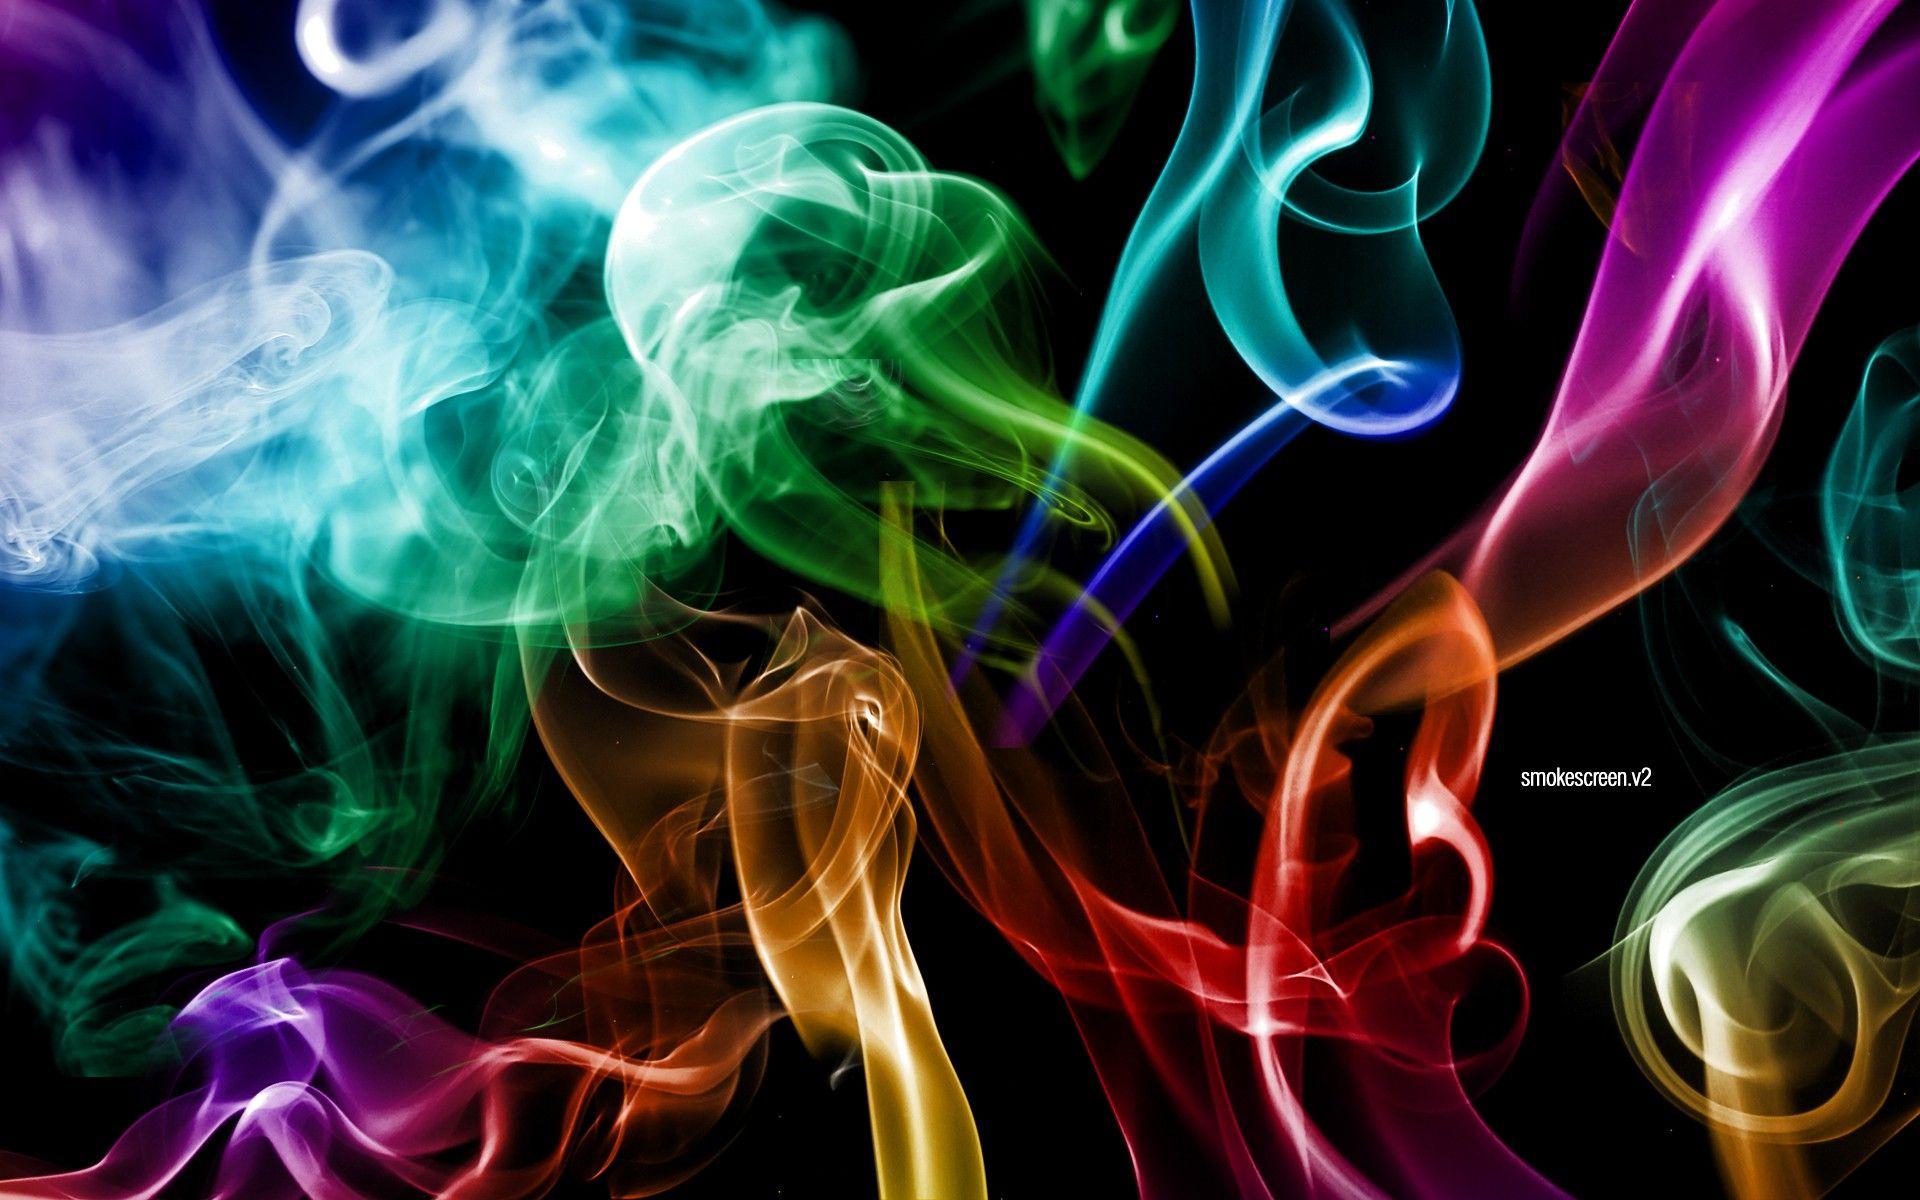 Smoke Colors Wallpaper. HD Wallpaper. ID. Smoke wallpaper, Colored smoke, Cool wallpaper background